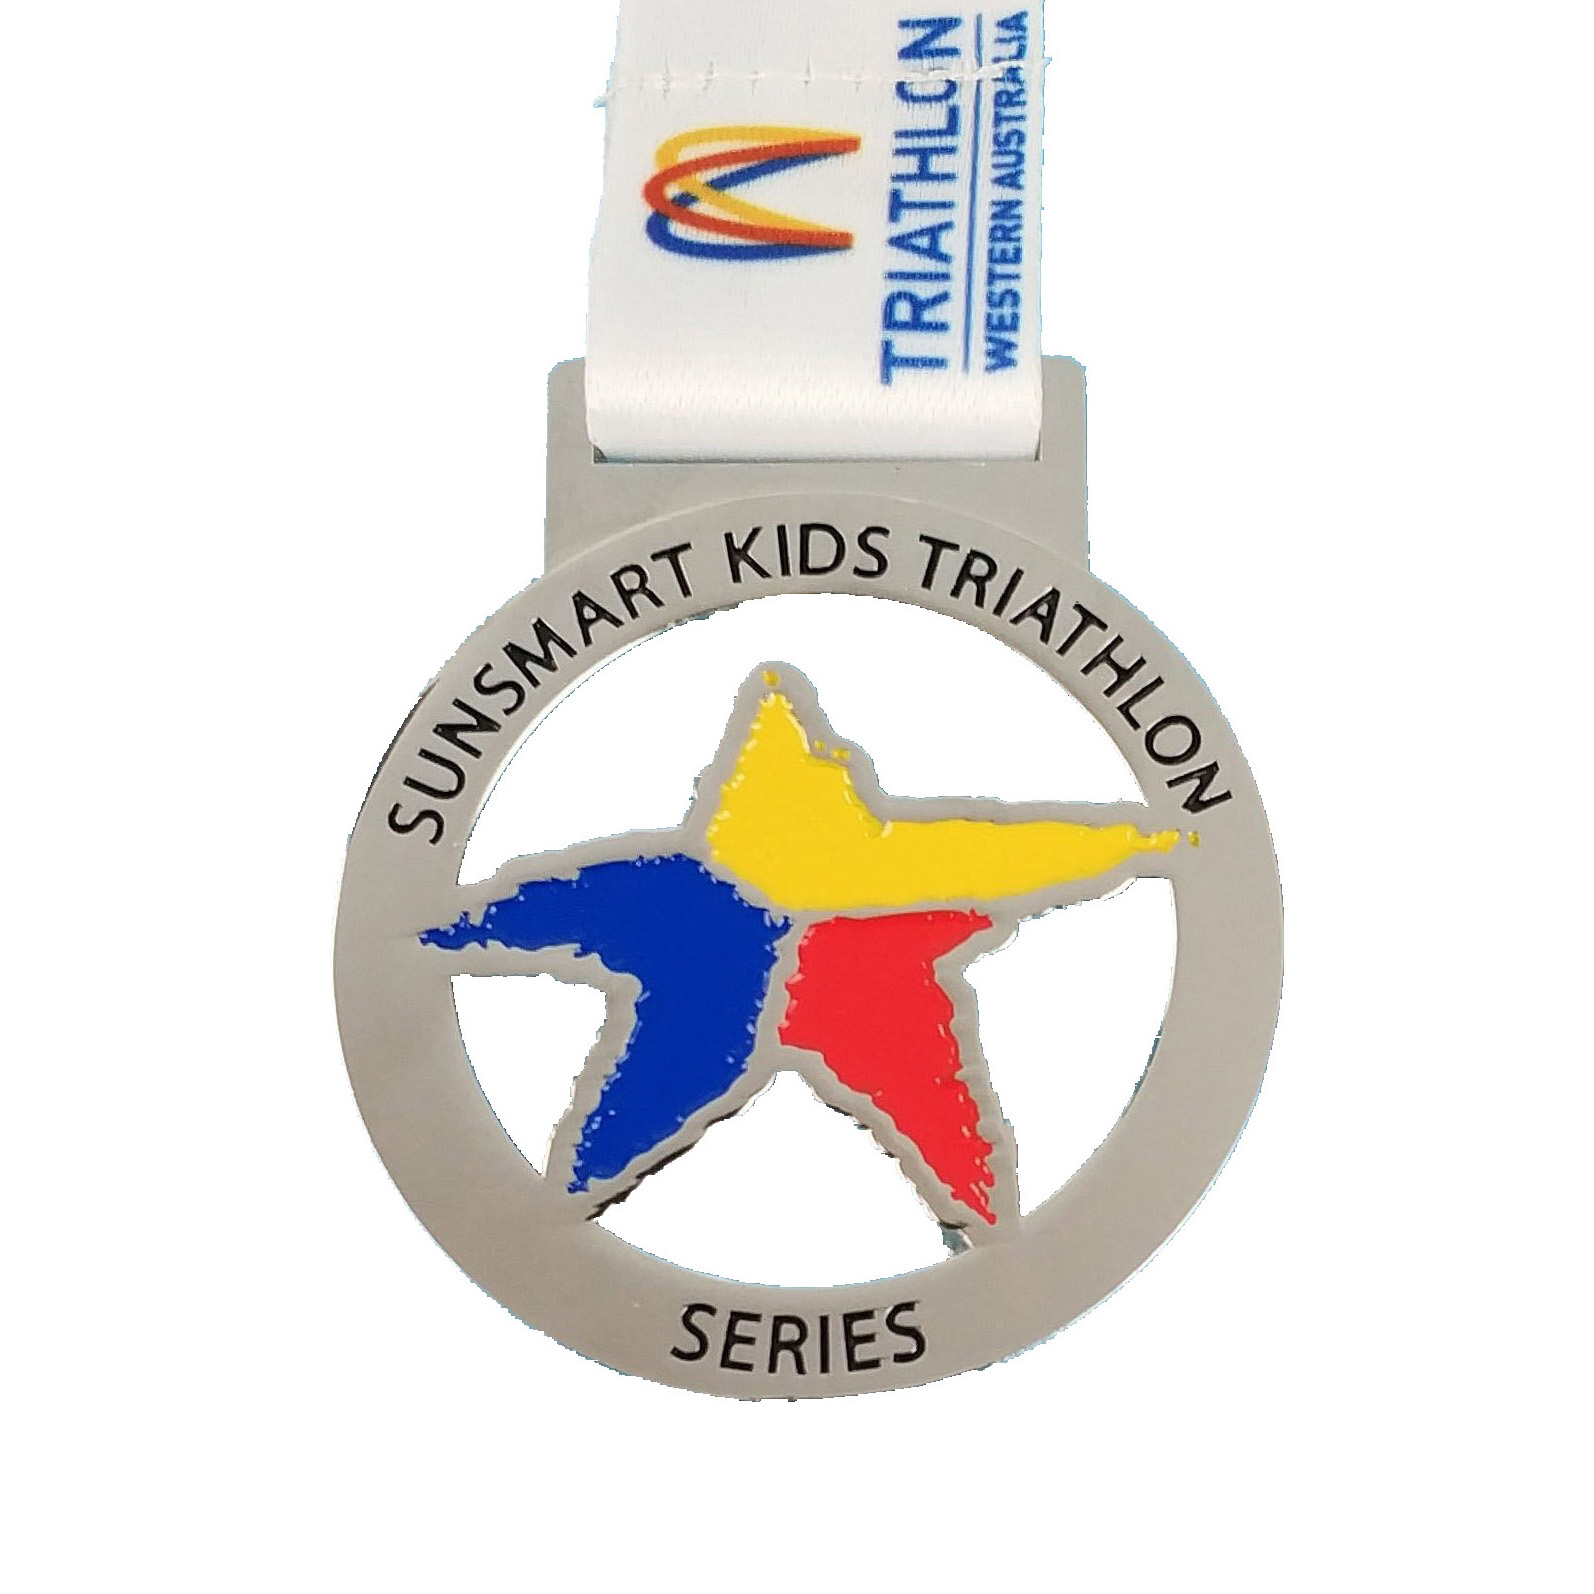 Series Medal for Kids Triathlon